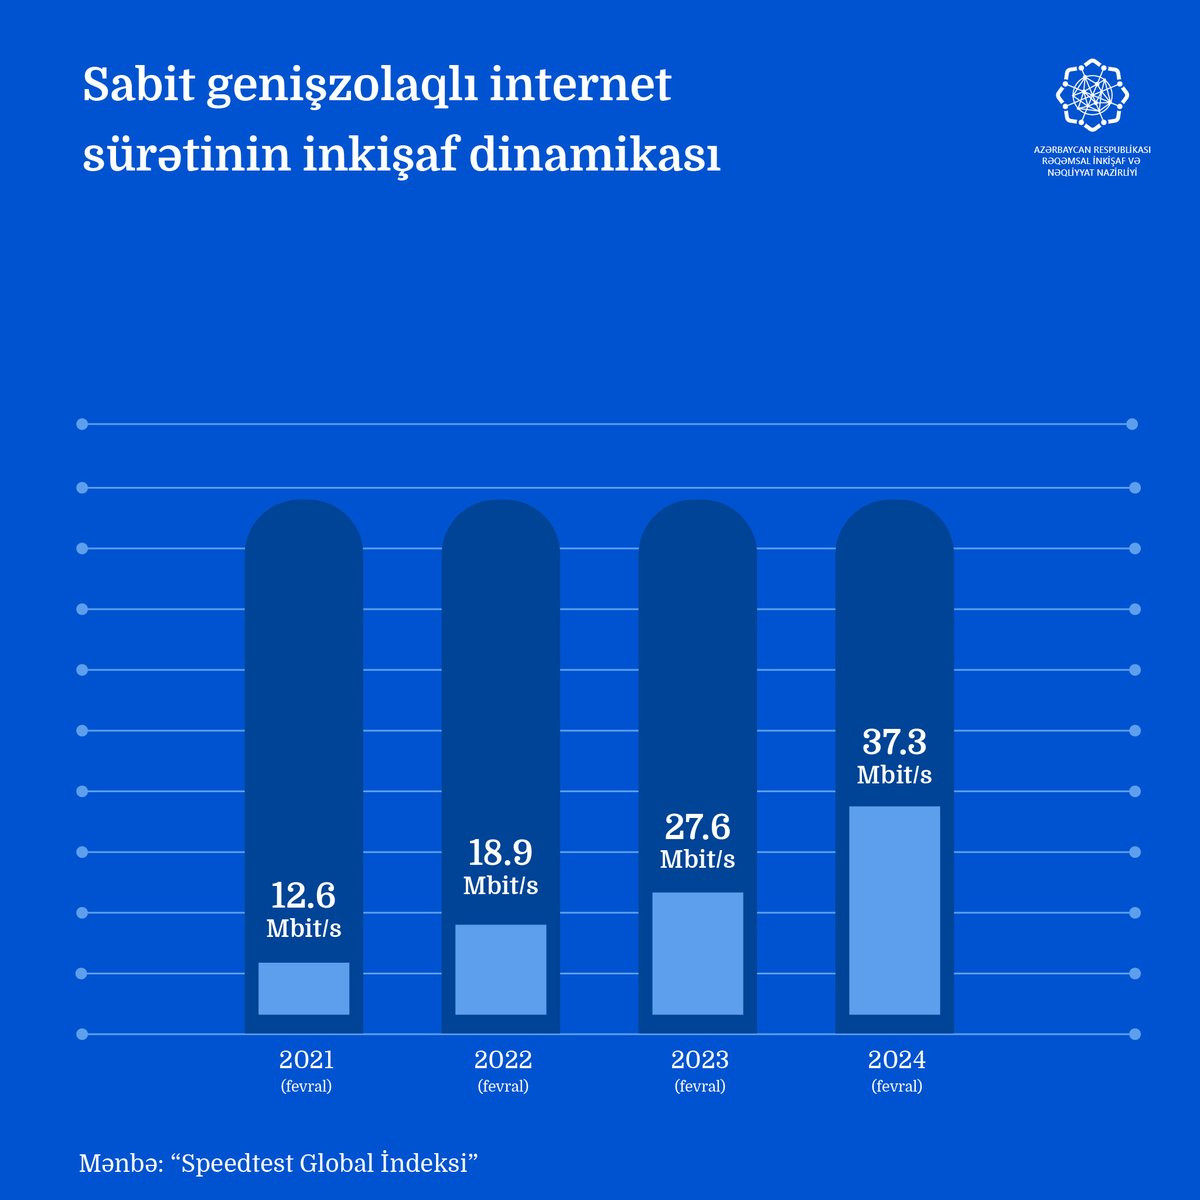 “Onlayn Azərbaycan” layihəsi çərçivəsində ölkədə 2,077 min ev təsərrüfatı və biznes subyekti yüksəksürətli internet xidmətləri ilə əhatə edilib. Bununla da layihənin 71%-i icra olunub. Nəticədə Azərbaycanda sabit genişzolaqlı internetin orta sürəti 37,3 Mbit/s təşkil edib.